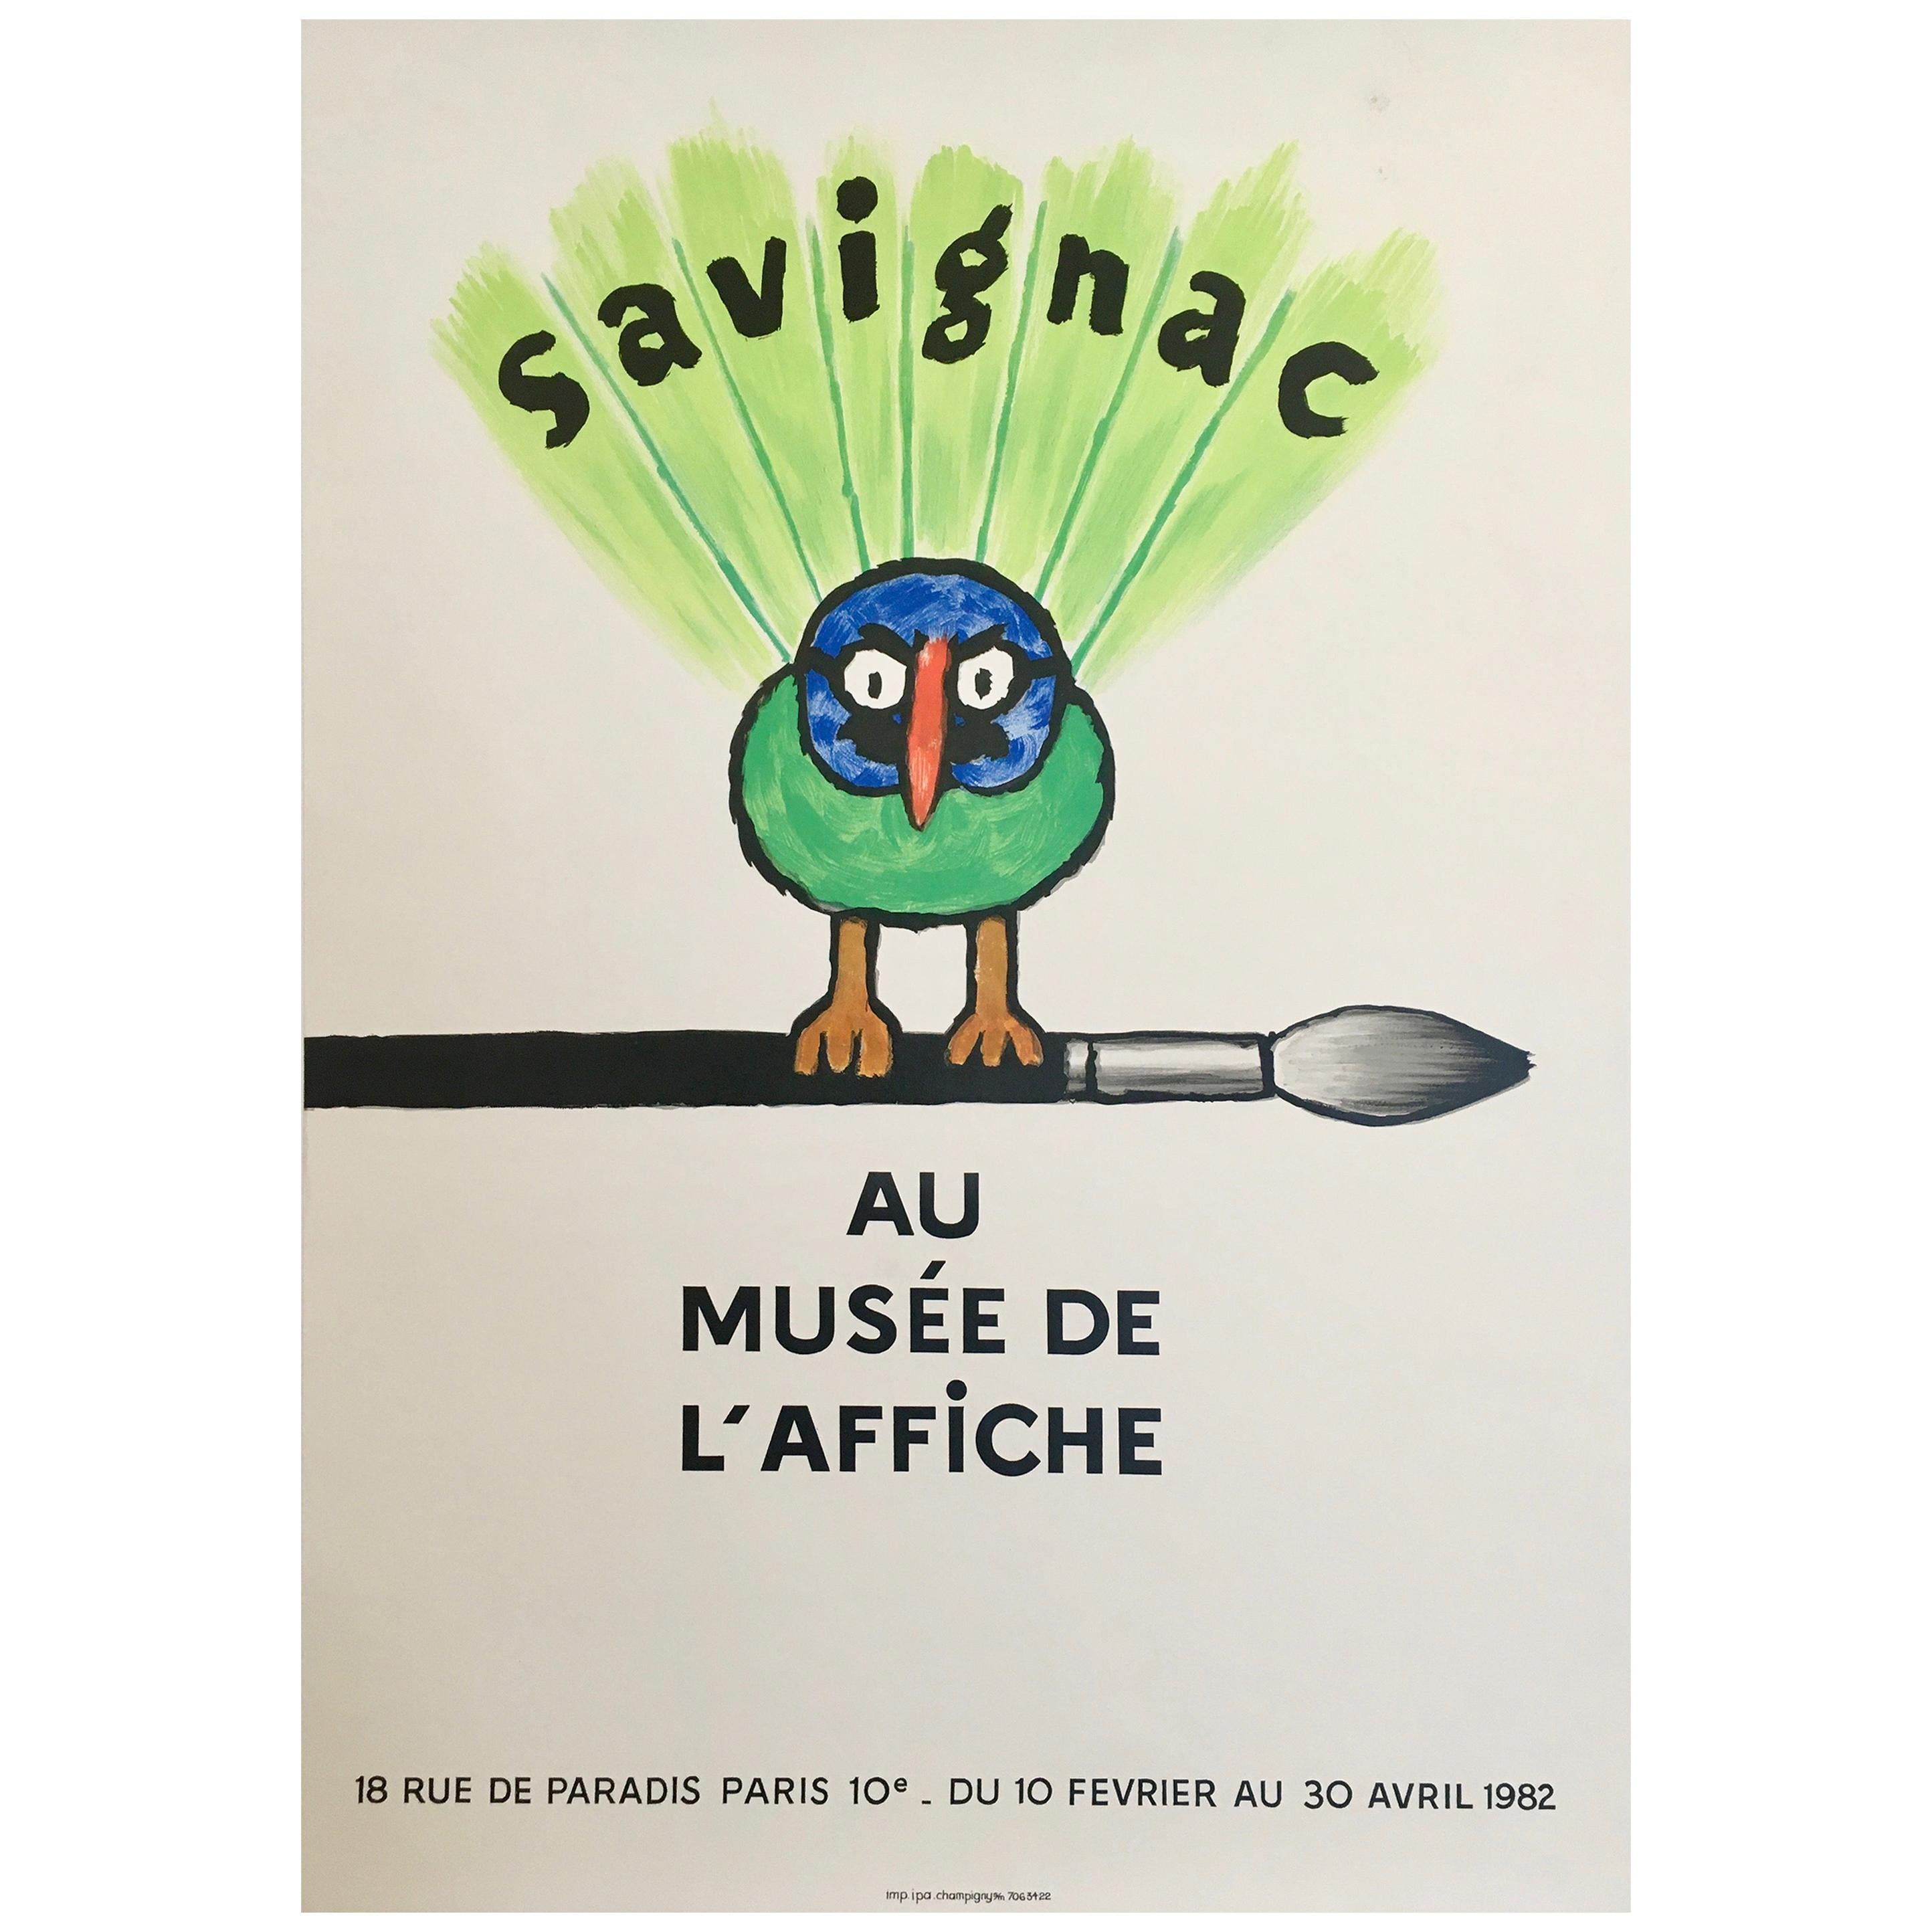 Savignac Bird 'Au Musee De L’Affich' Original Vintage French Exhibition Poster For Sale